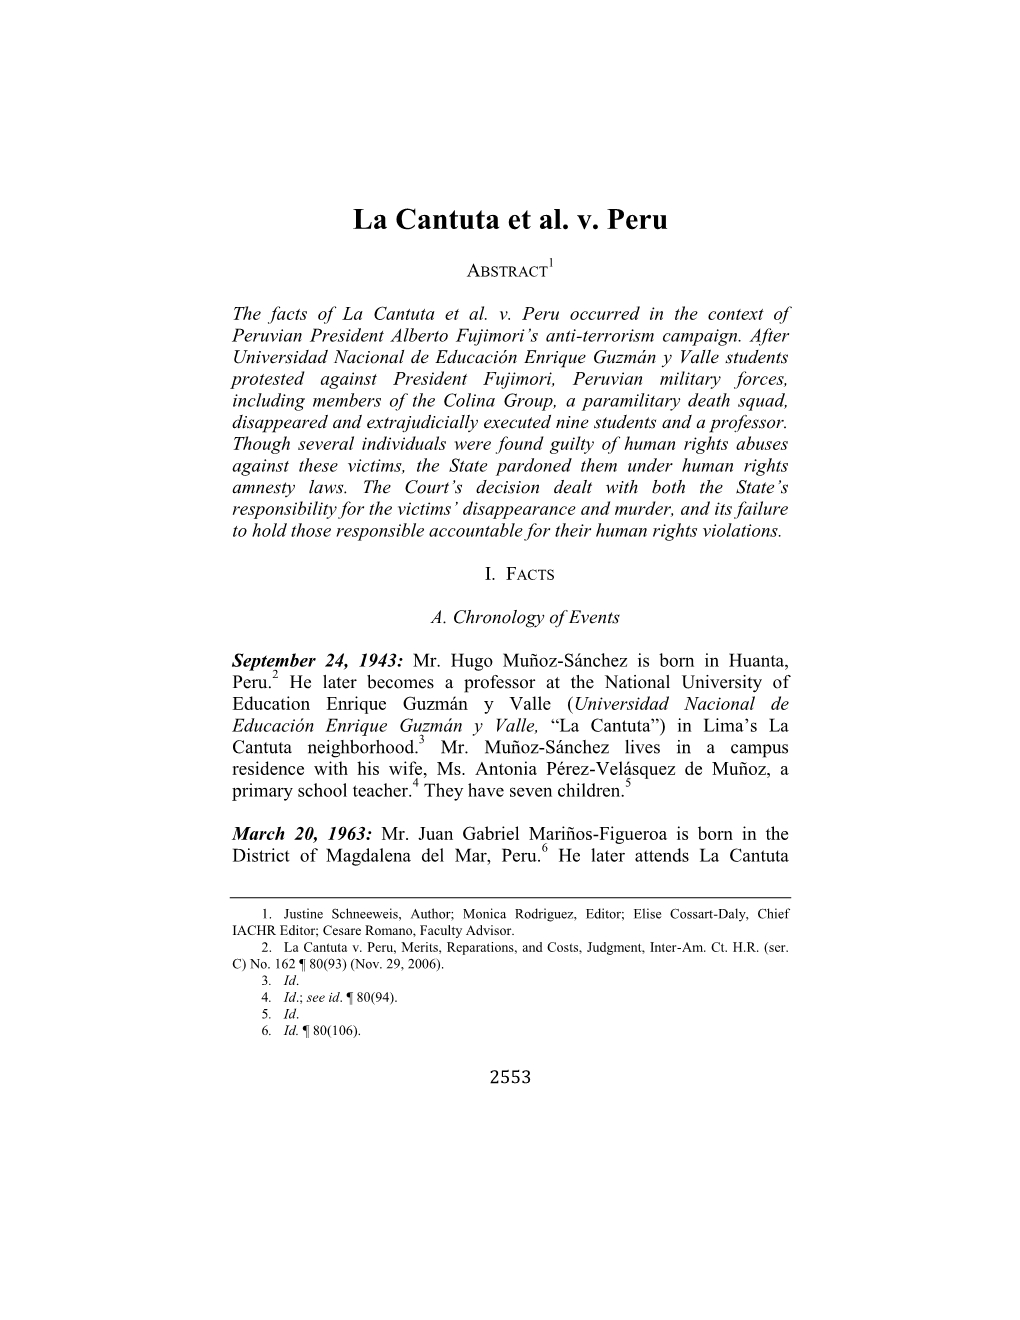 La Cantuta Et Al. V. Peru, Case Summary